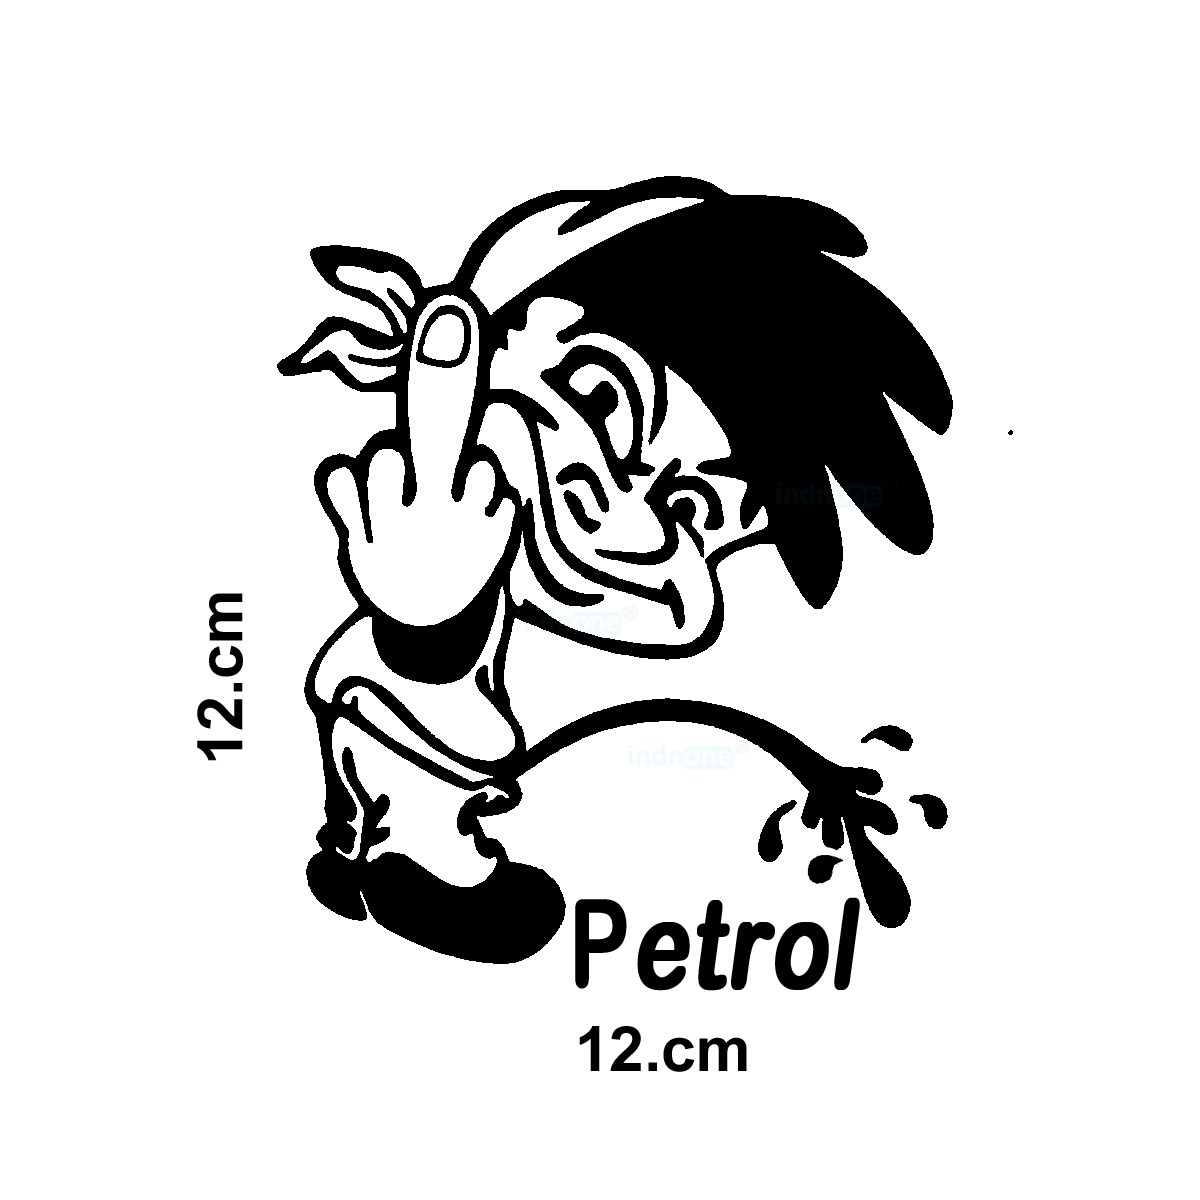 indnone® Funny Boy Petrol Logo Sticker for Car. Car Sticker Stylish Fuel Lid |Black Standard Size